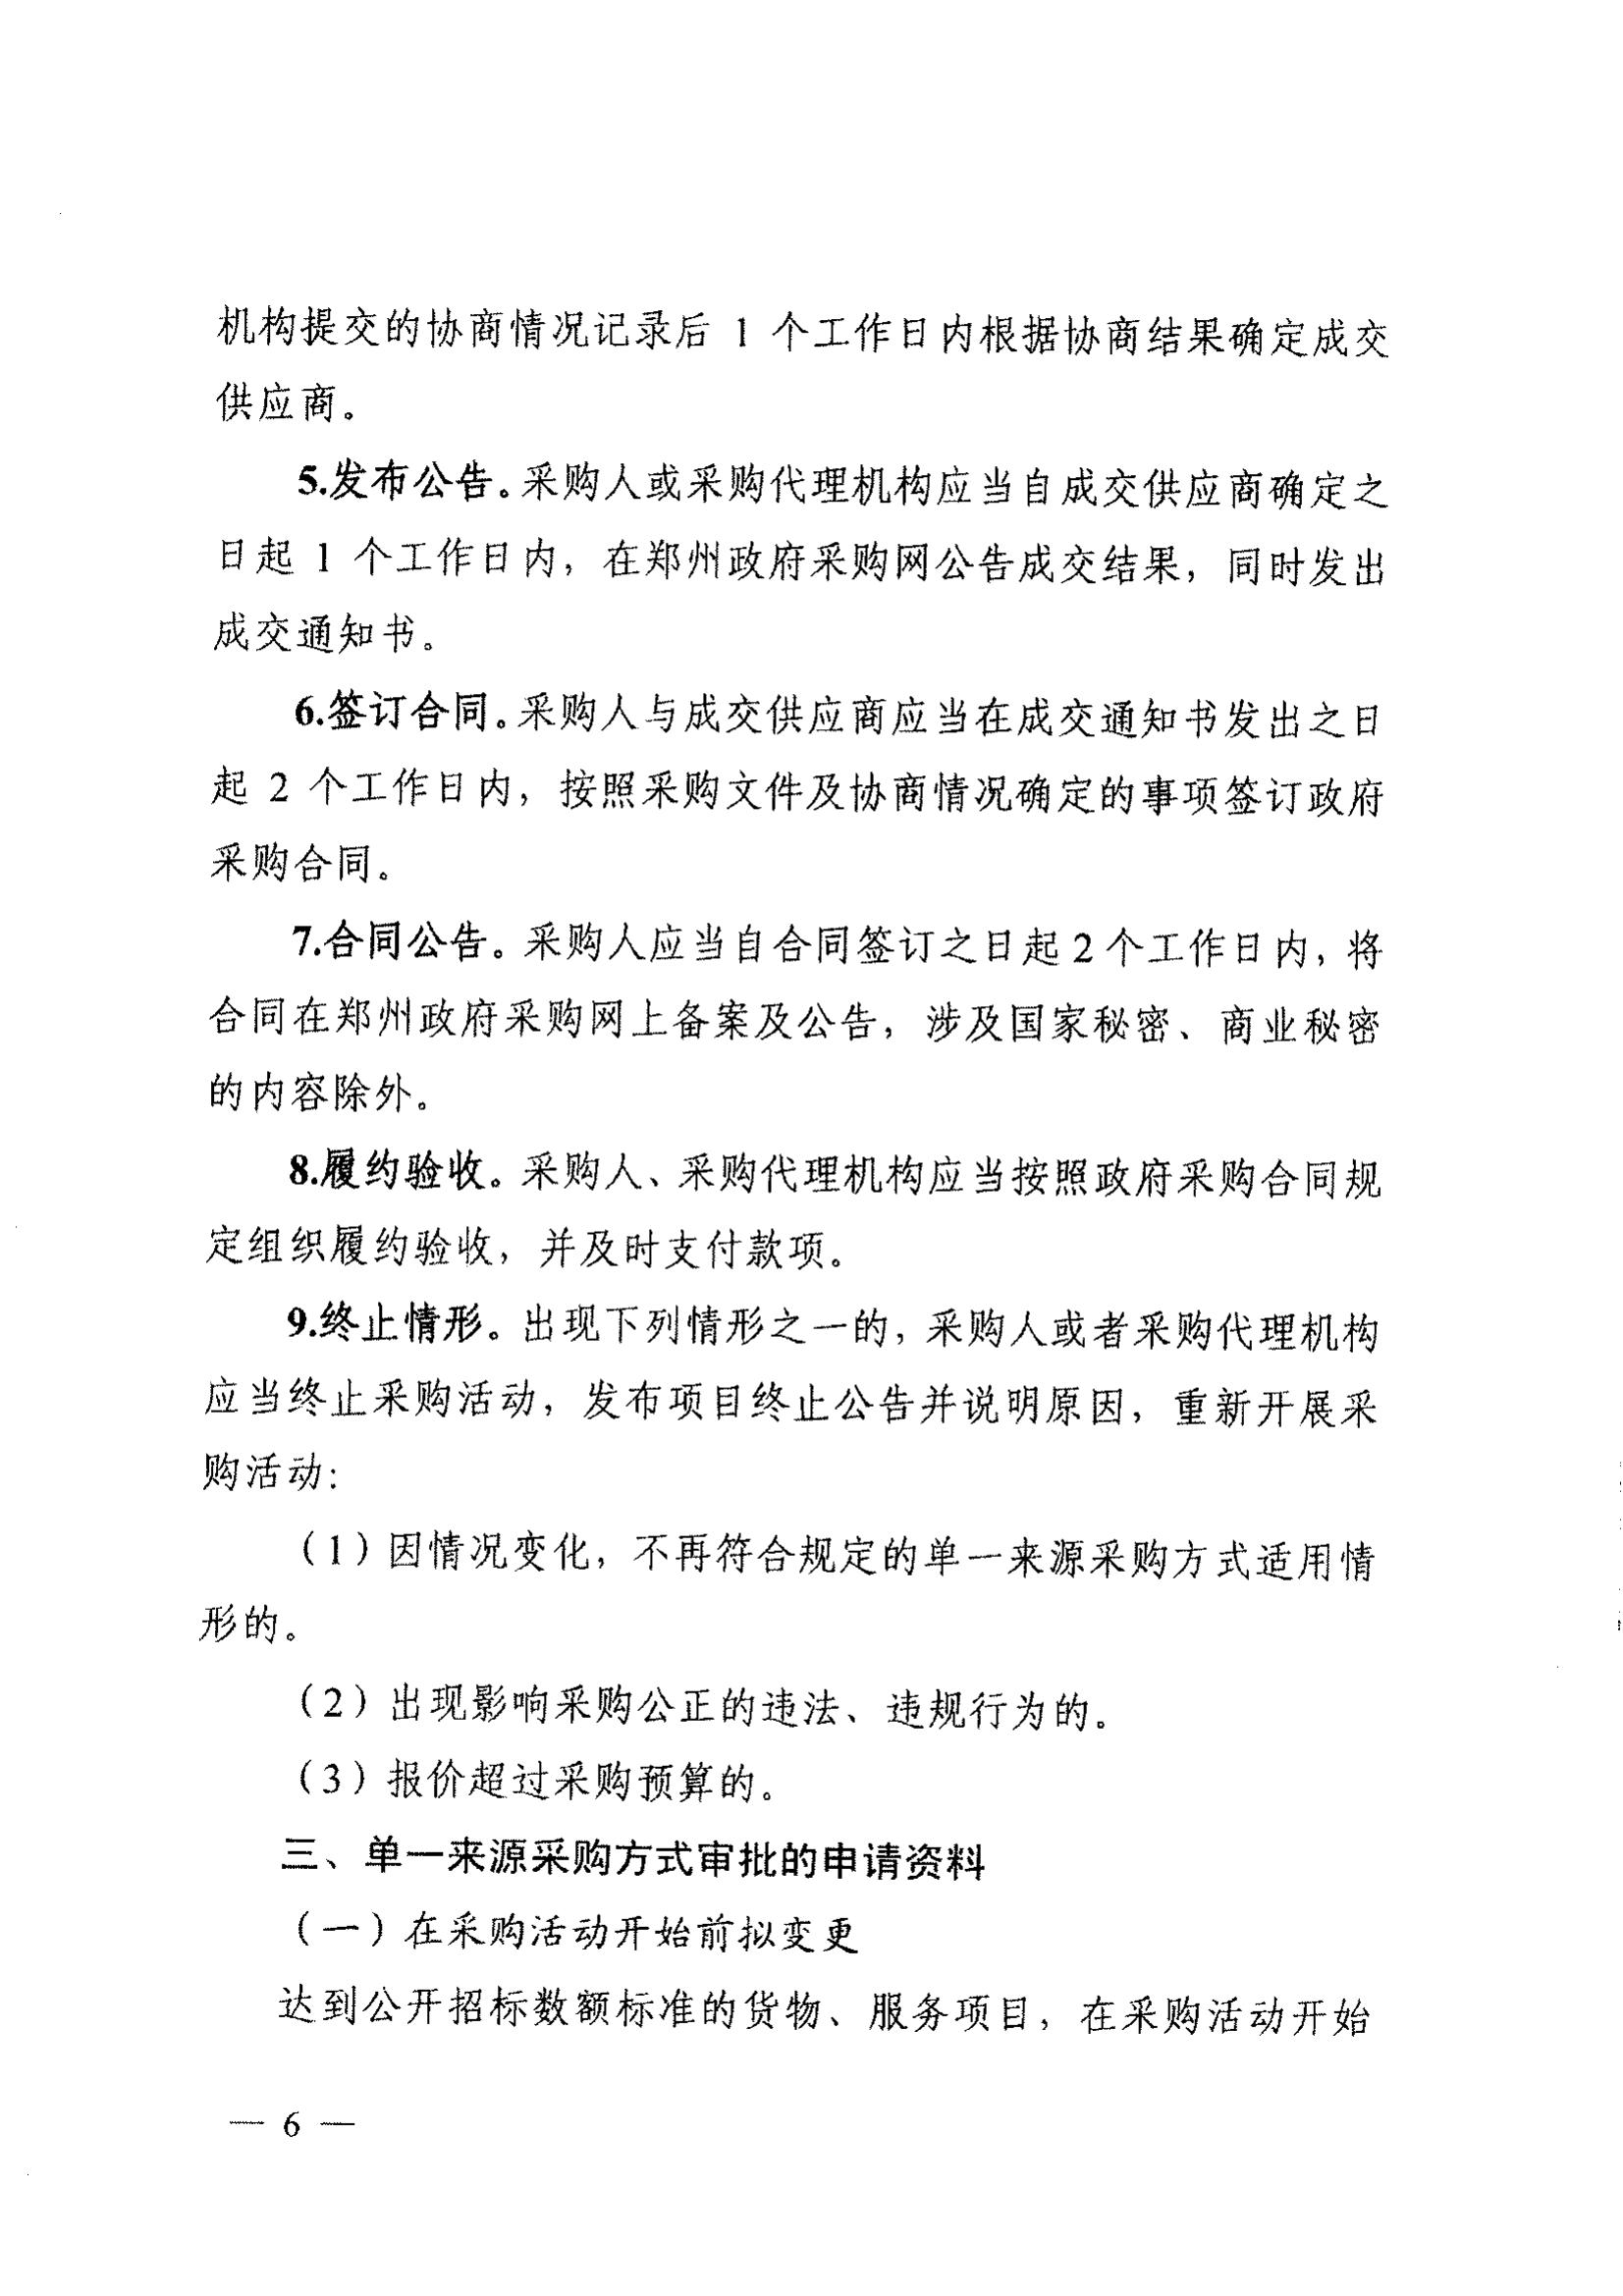 登封市财政局关于转发《郑州市财政局关于规范市级单一来源采购方式有关事项的通知》通知(图8)